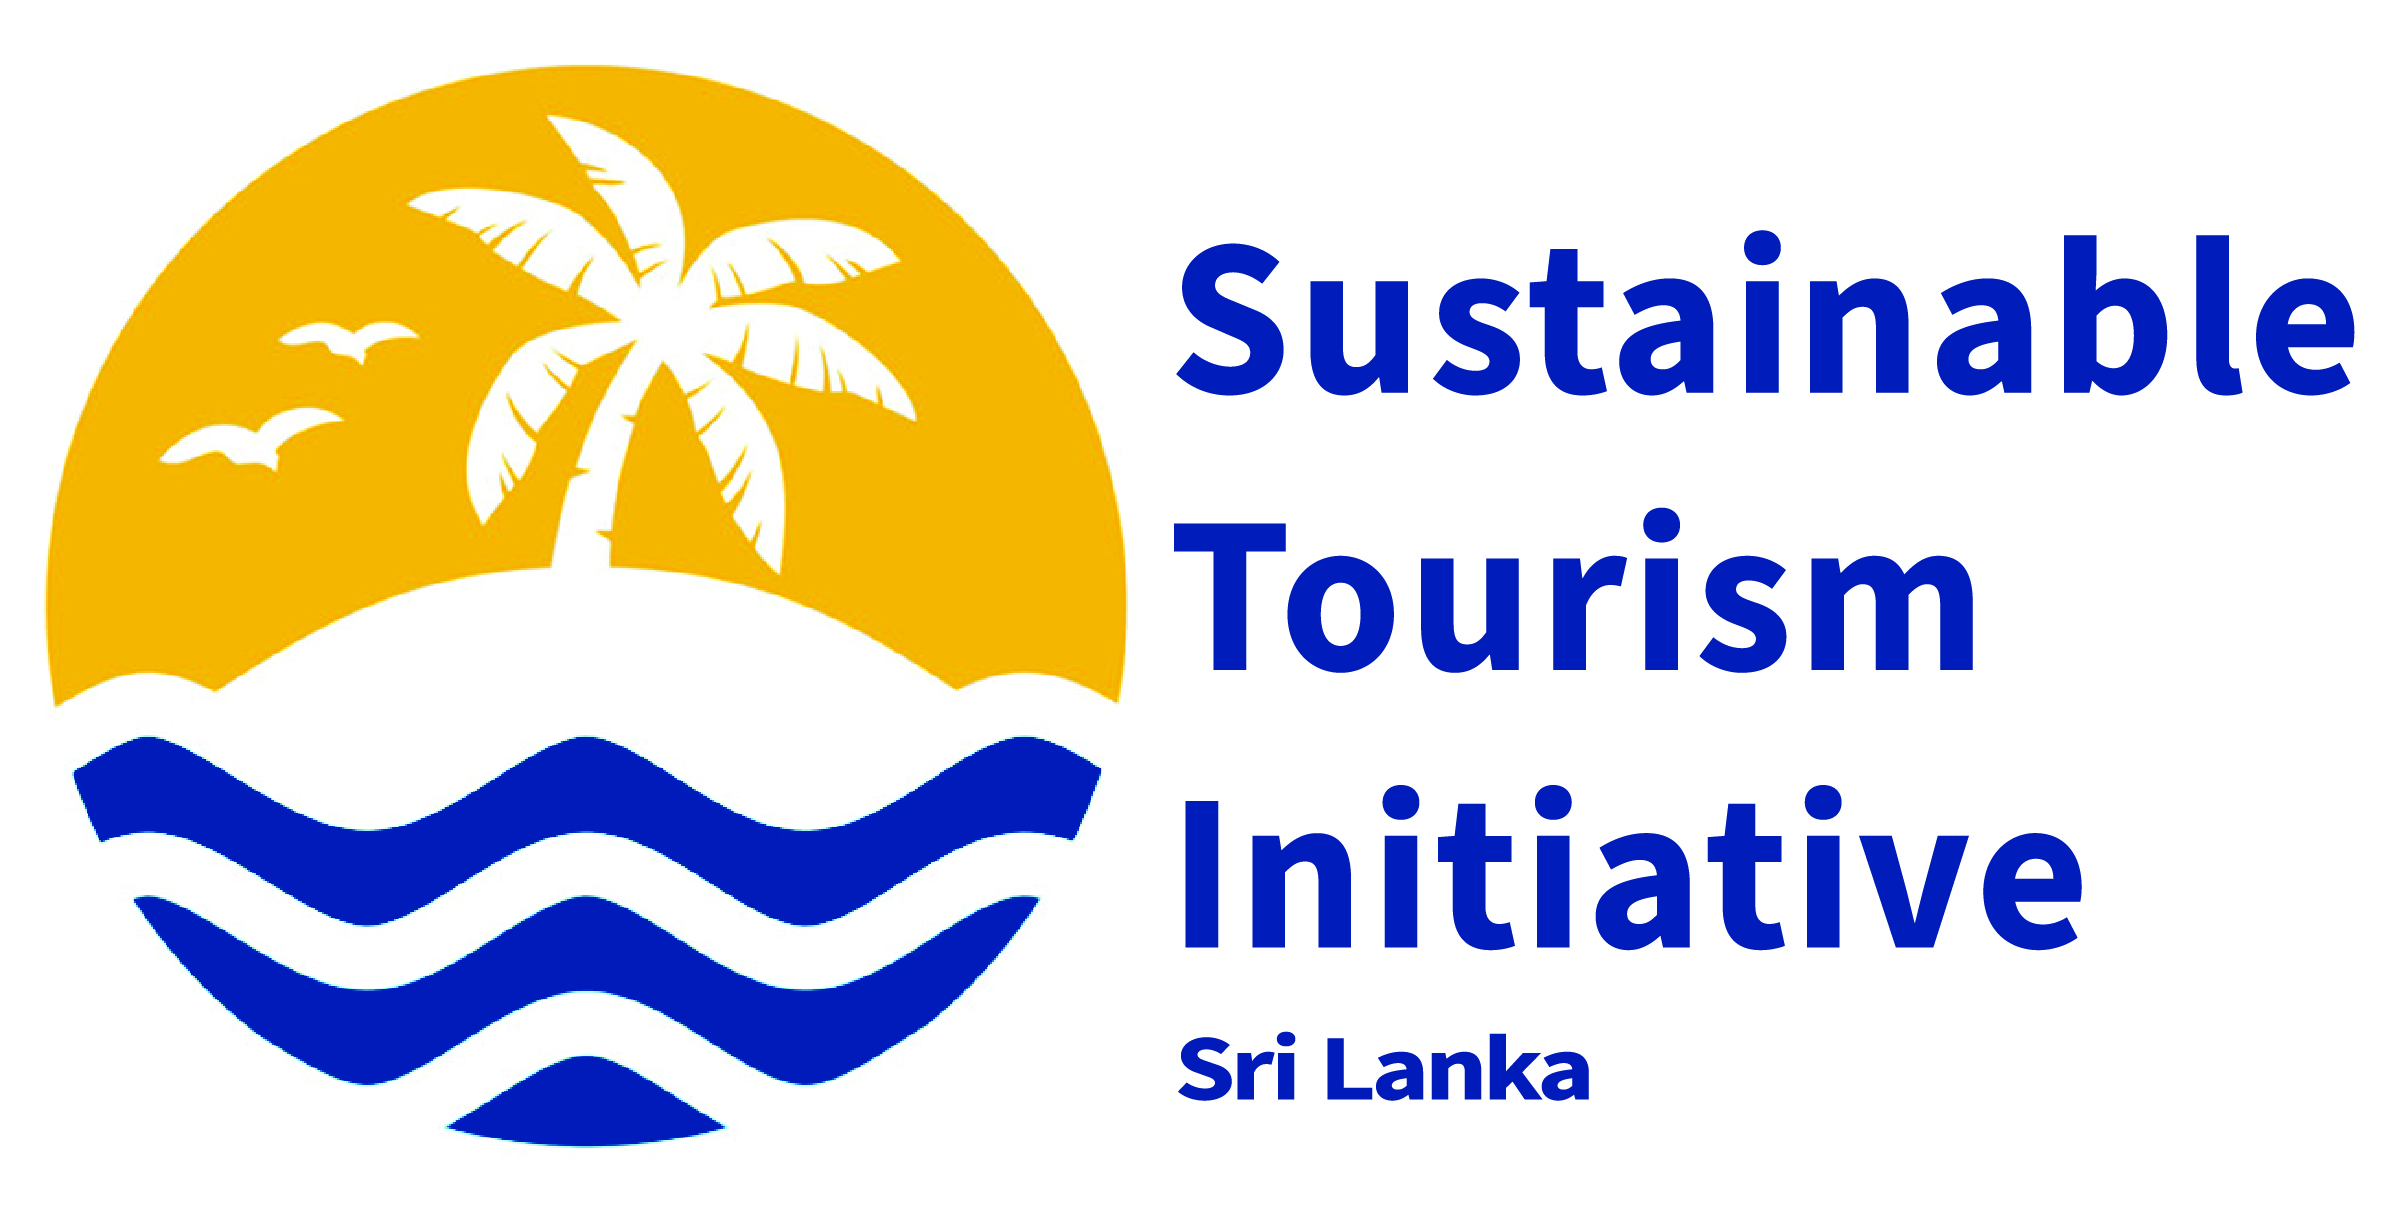 Sustainable Tourism Initiative Sri Lanka